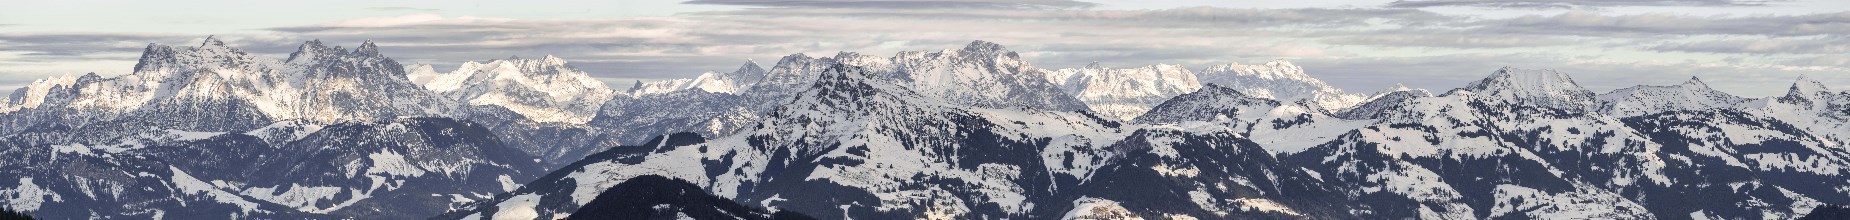 Loferer Steinberge and Kitzbuhler Alps